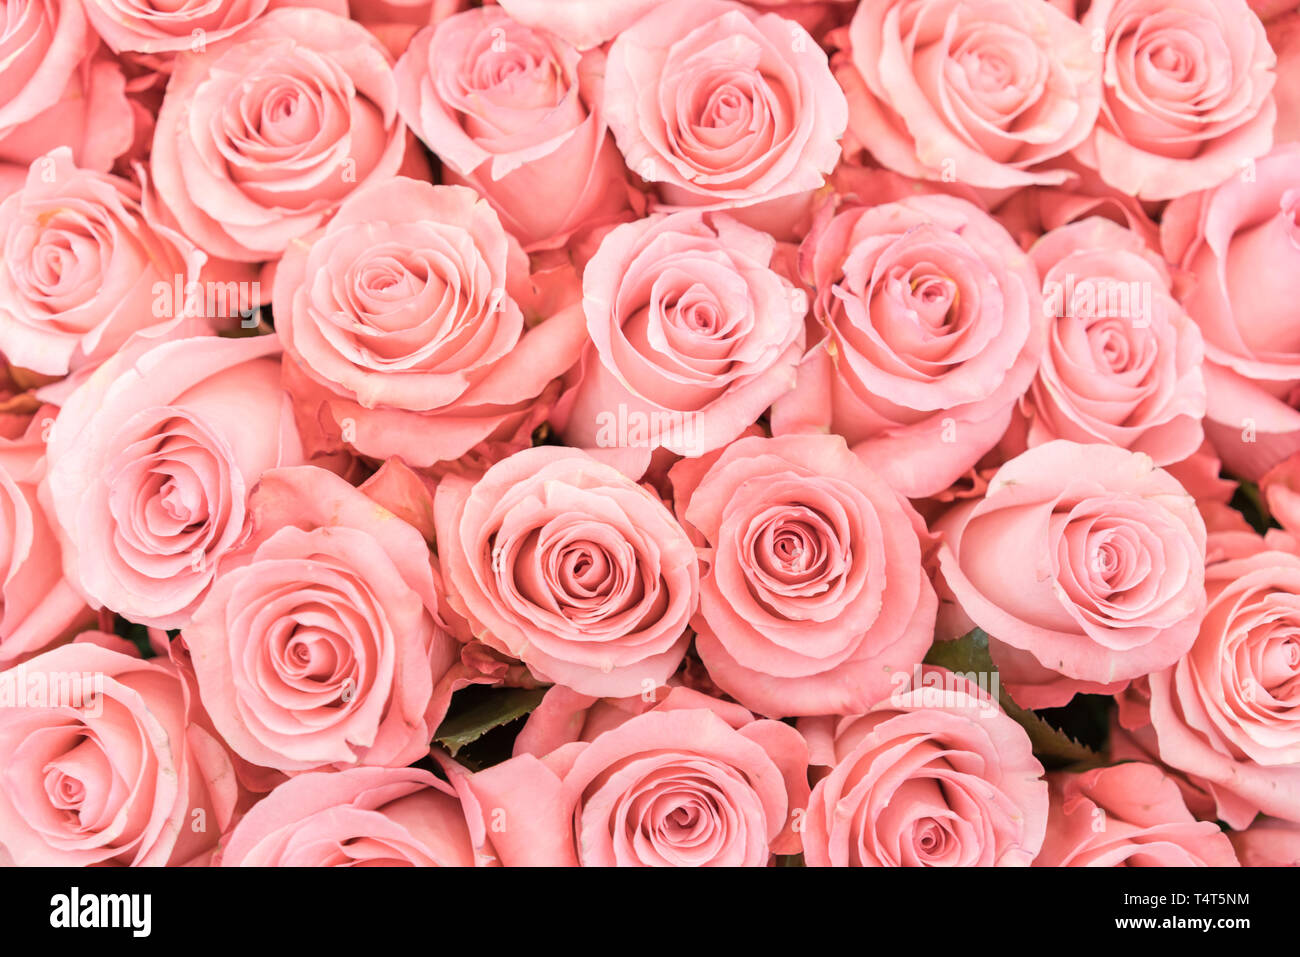 Một nền hoa hồng cam và đào đầy màu sắc, tươi mới và rực rỡ trên khung ảnh này. Không gì tuyệt vời hơn khi ngắm nhìn những bông hoa tươi trên nền đầy mầu sắc này, đặc biệt là hoa hồng. Hãy để tâm trí được thư giãn với cảnh đẹp này, và ngạc nhiên với sự hoàn hảo của thiên nhiên.